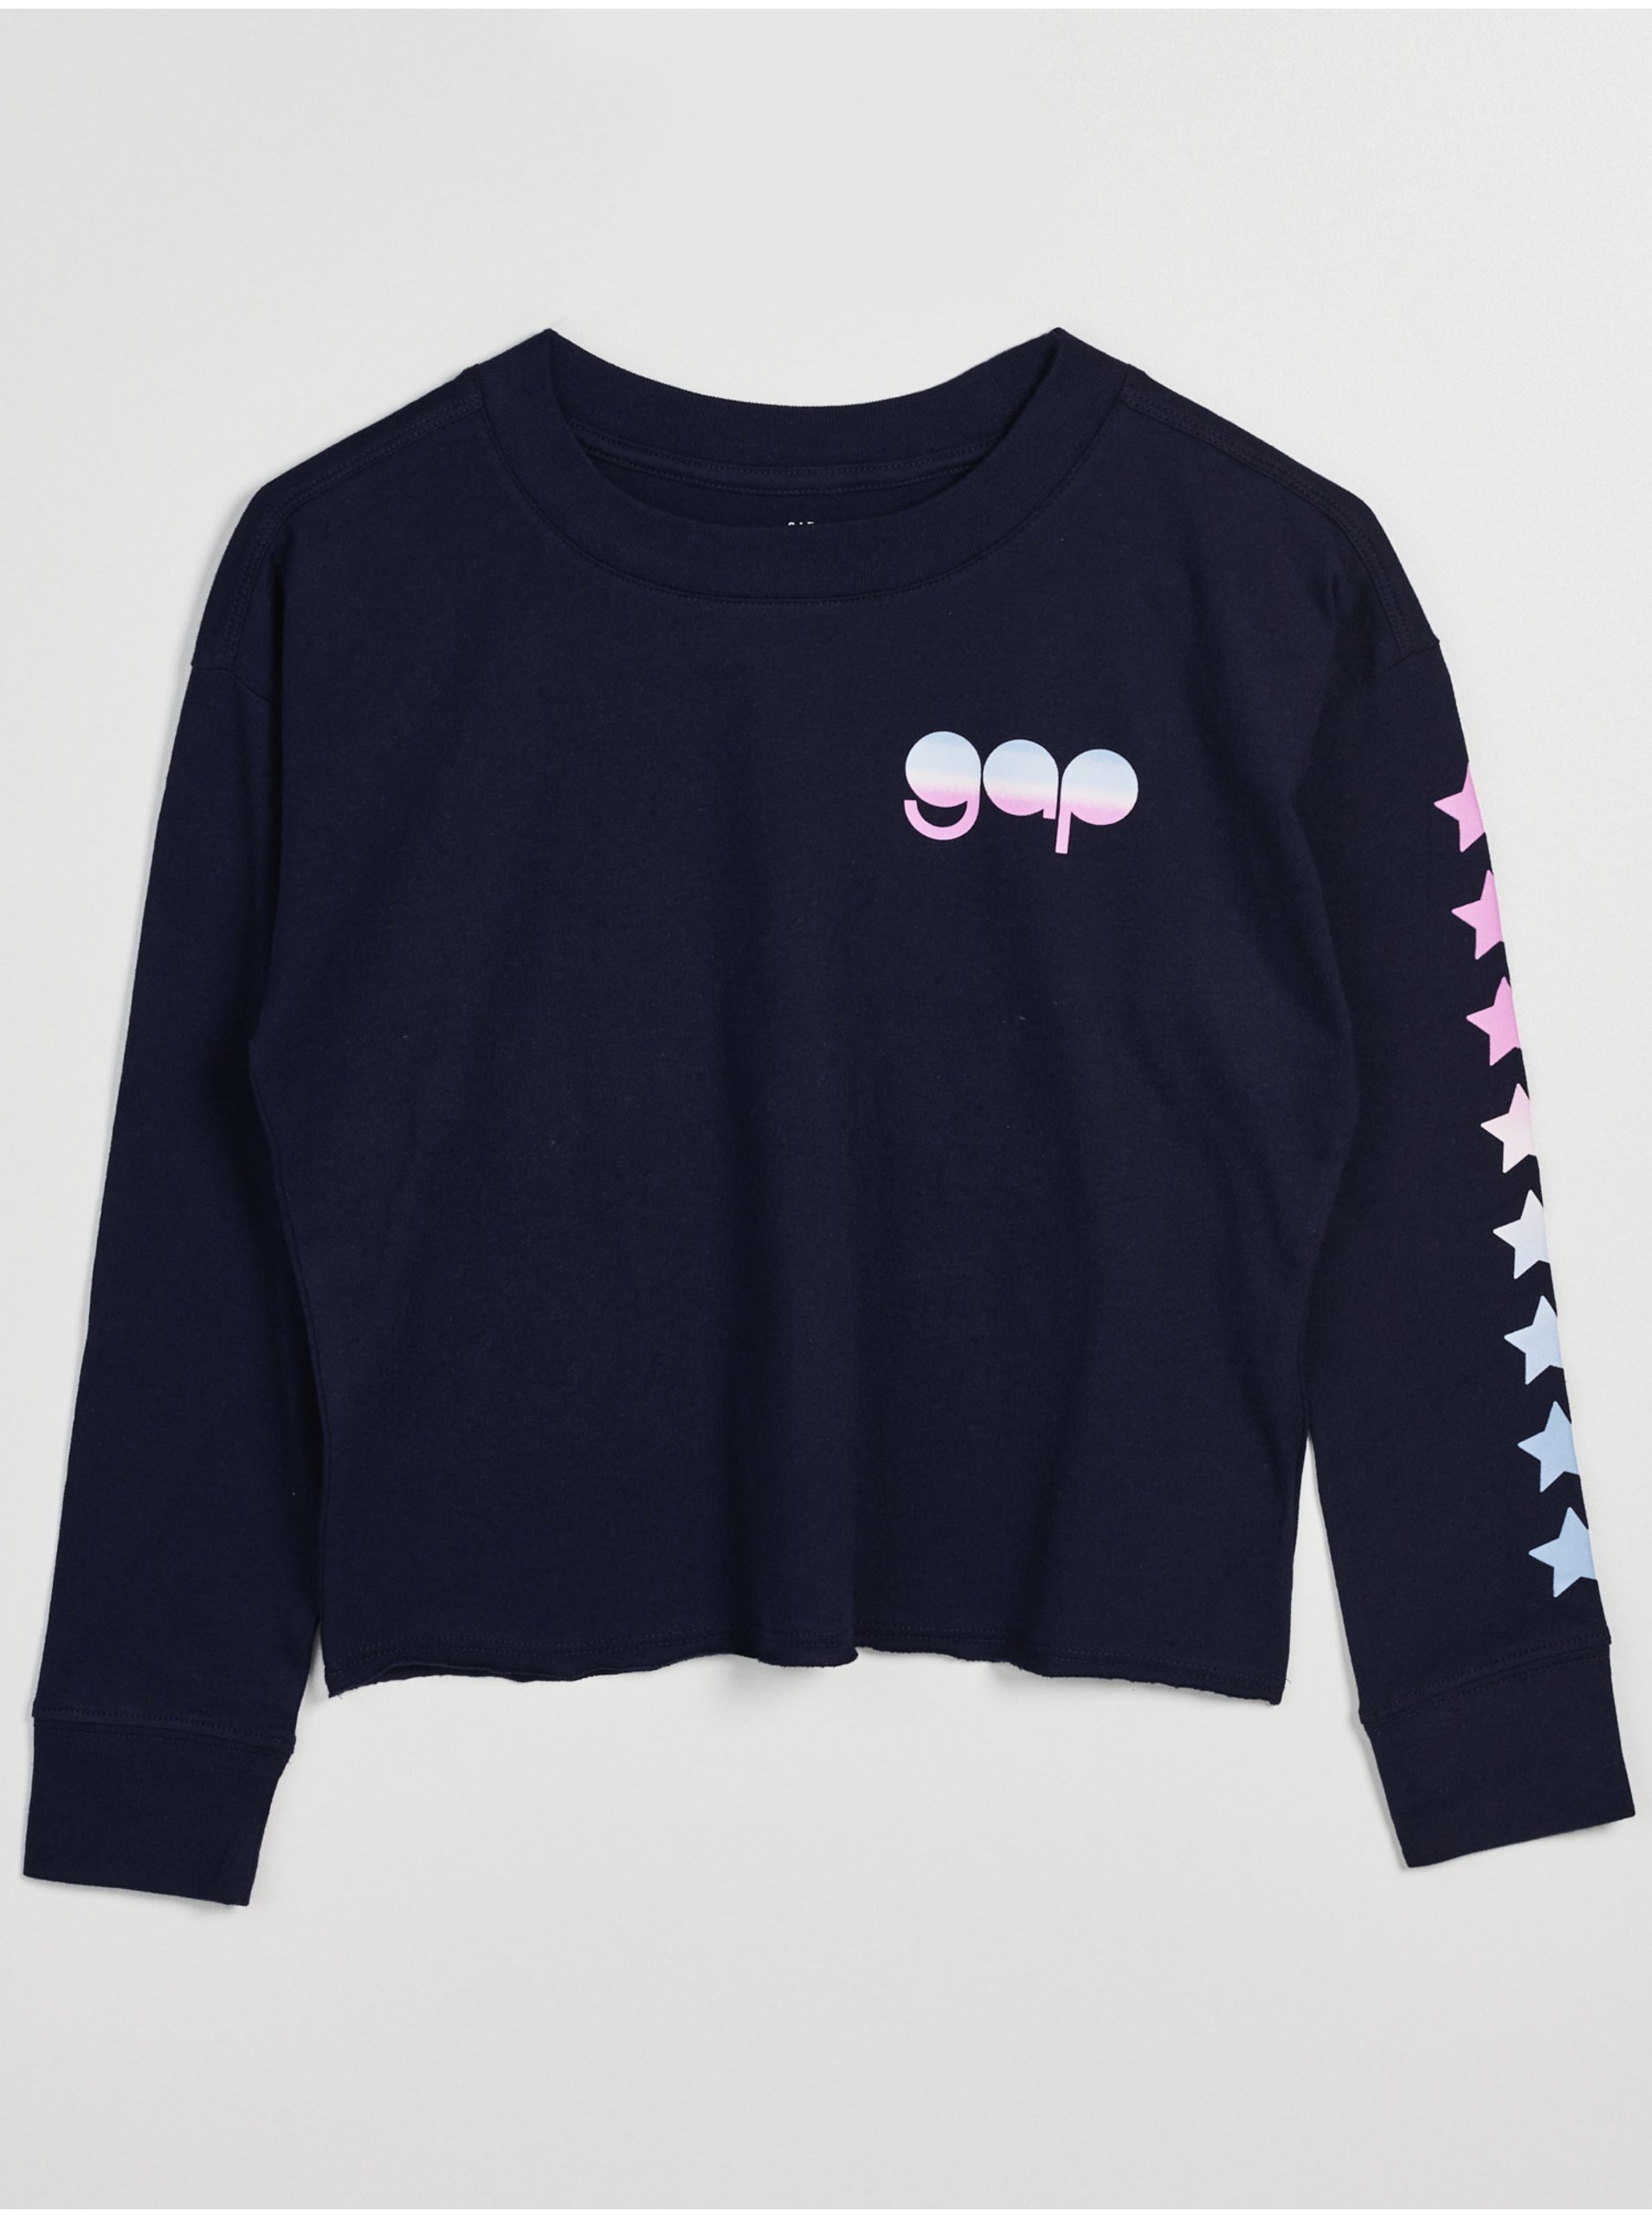 Lacno Tmavomodré dievčenské tričko s logom a hviezdami GAP